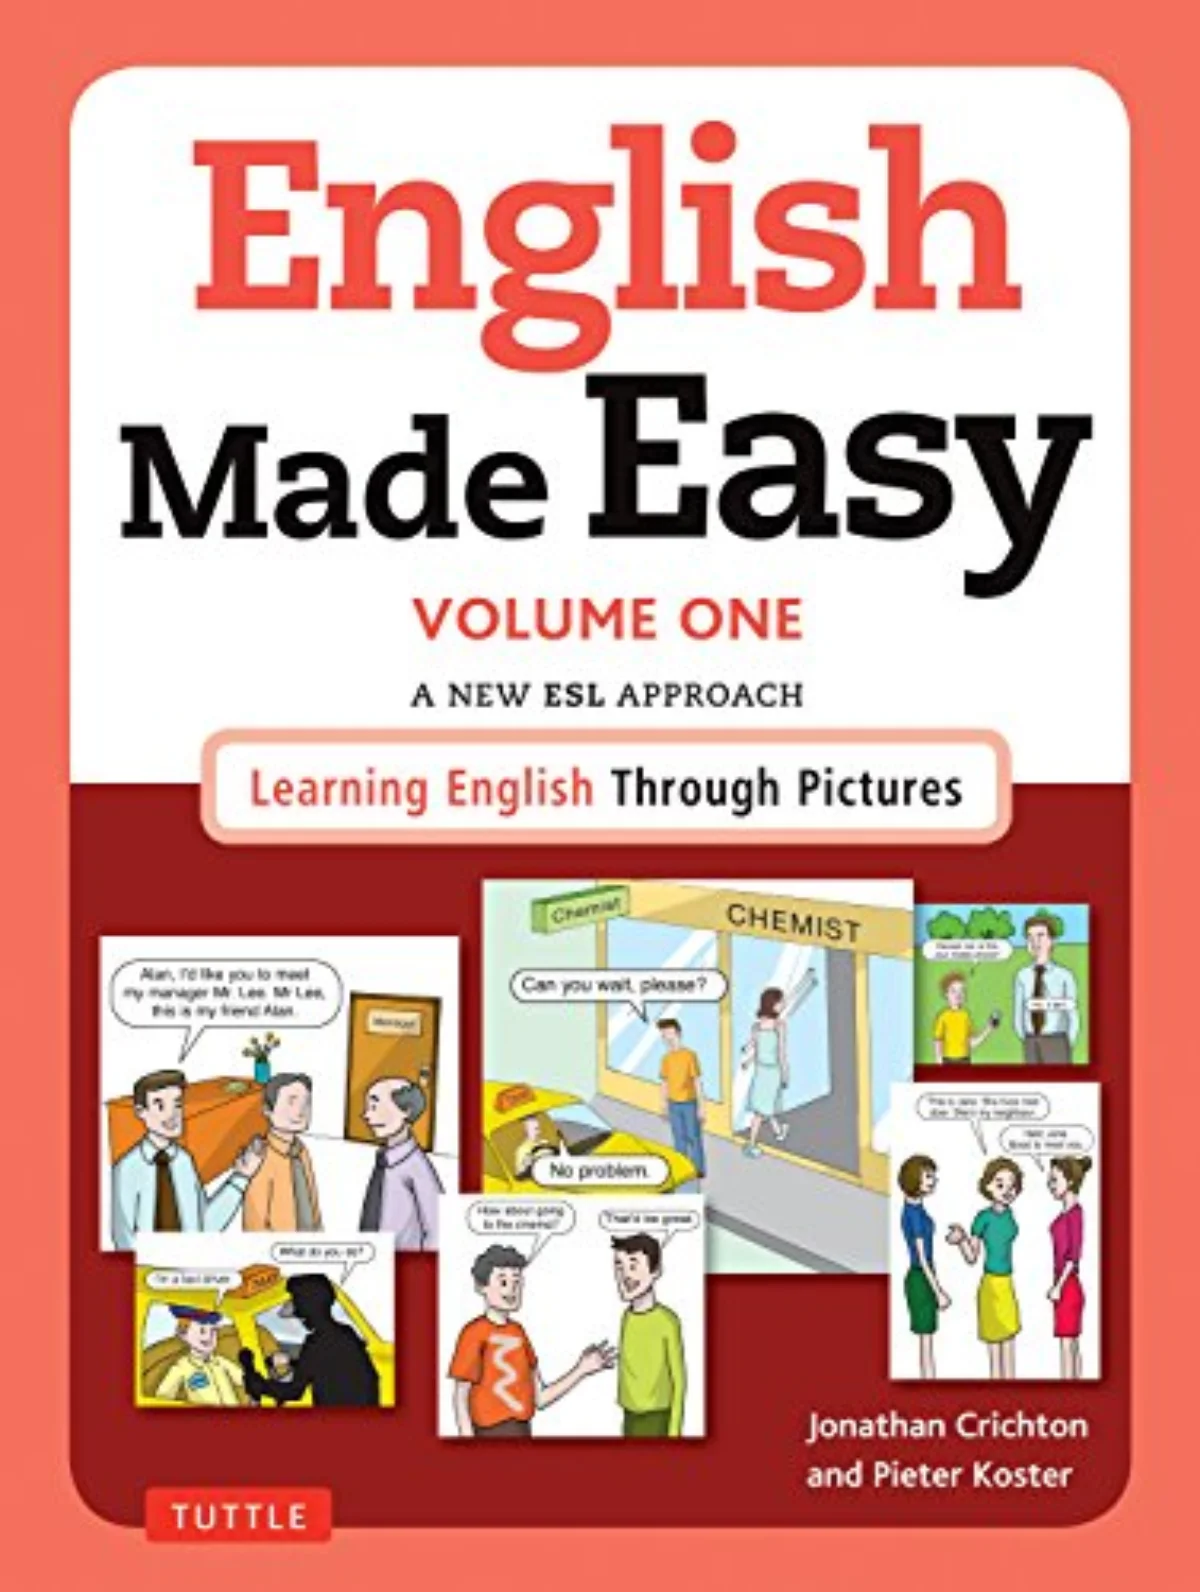 Baca Buku untuk Belajar Bahasa Inggris Secara Efektif